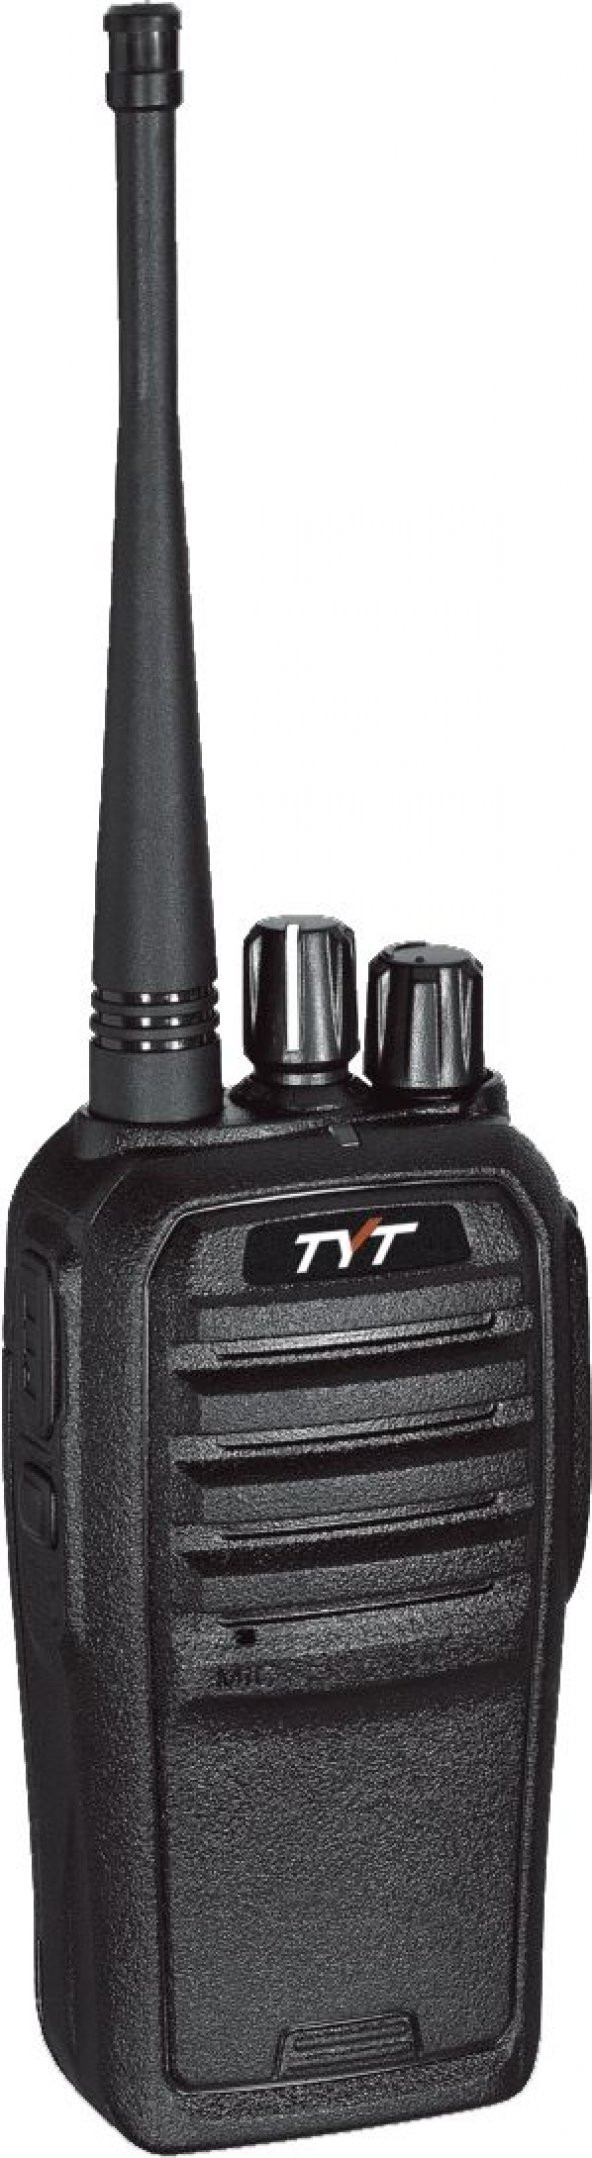 TYT TC-5000 PMR446 El Telsizi